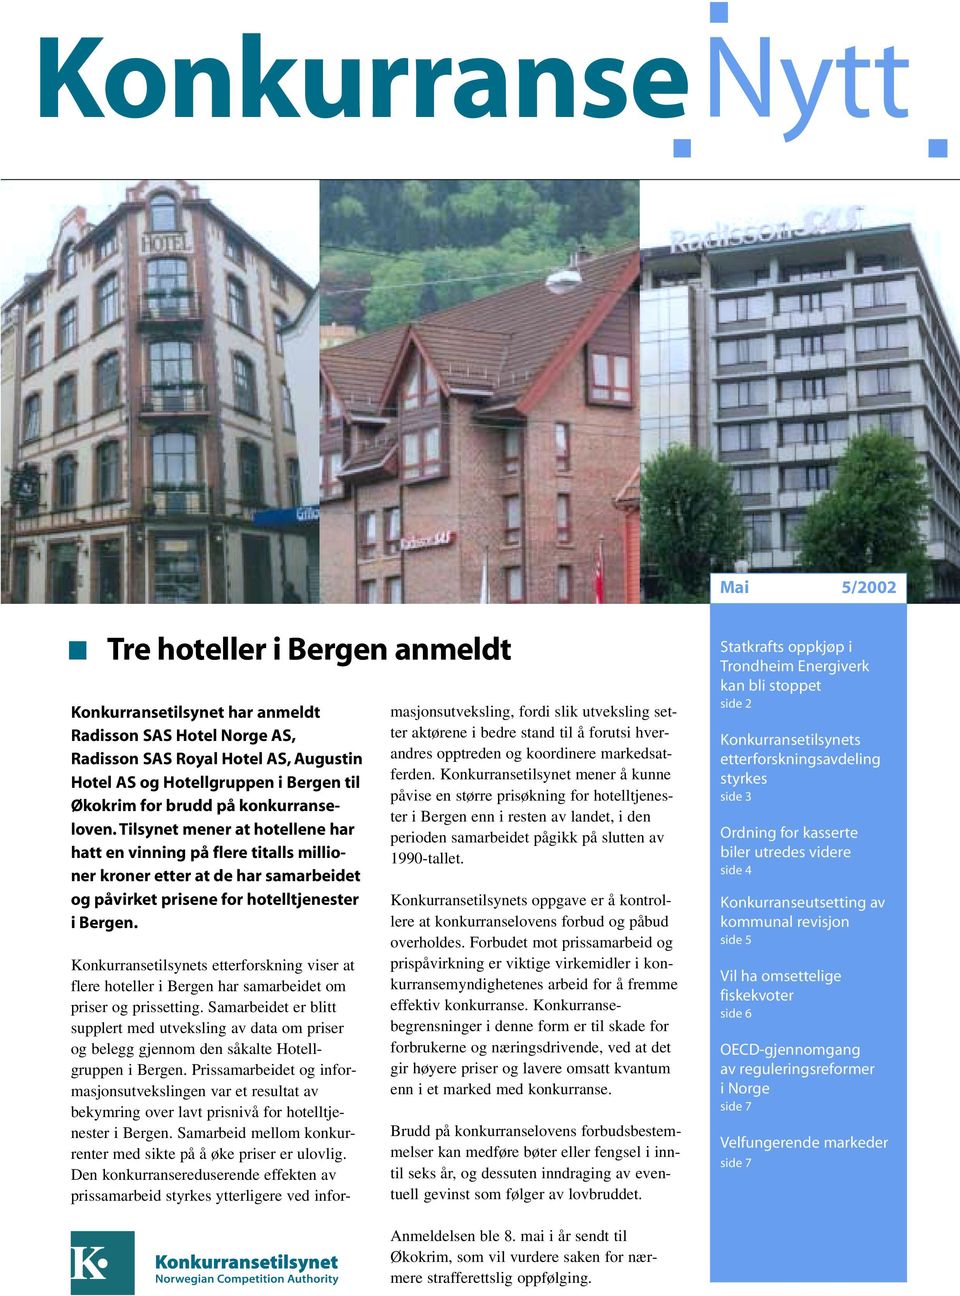 Konkurransetilsynets etterforskning viser at flere hoteller i Bergen har samarbeidet om priser og prissetting.